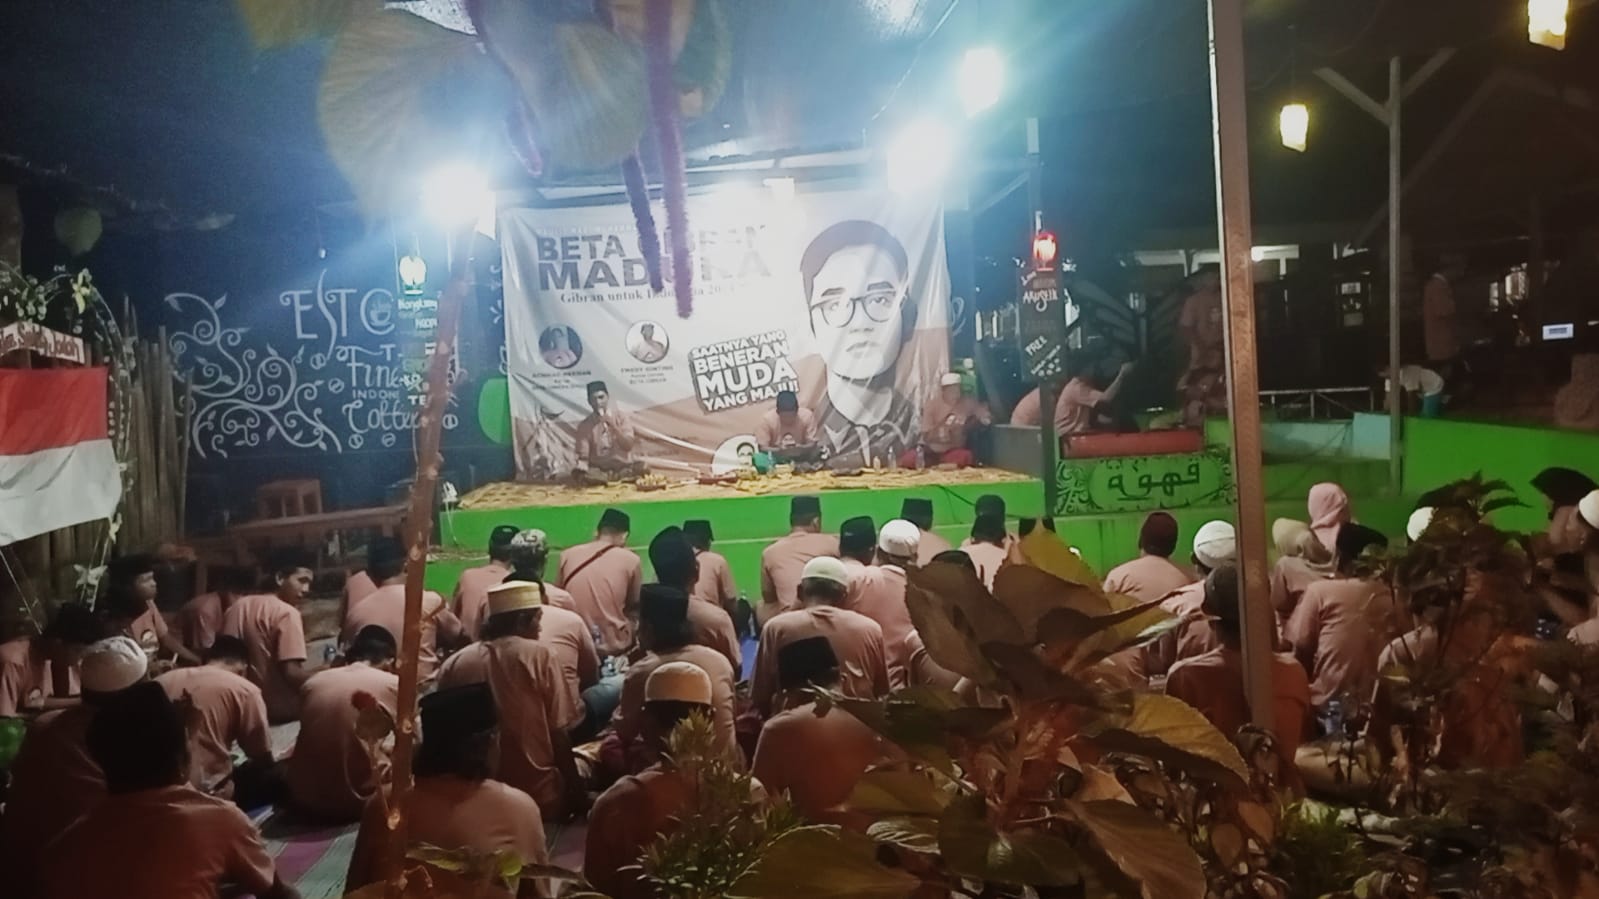 Ratusan Pemuda Dari 4 Kabupaten di Madura Deklarasikan Diri Jadi Relawan “Beta Gibran”